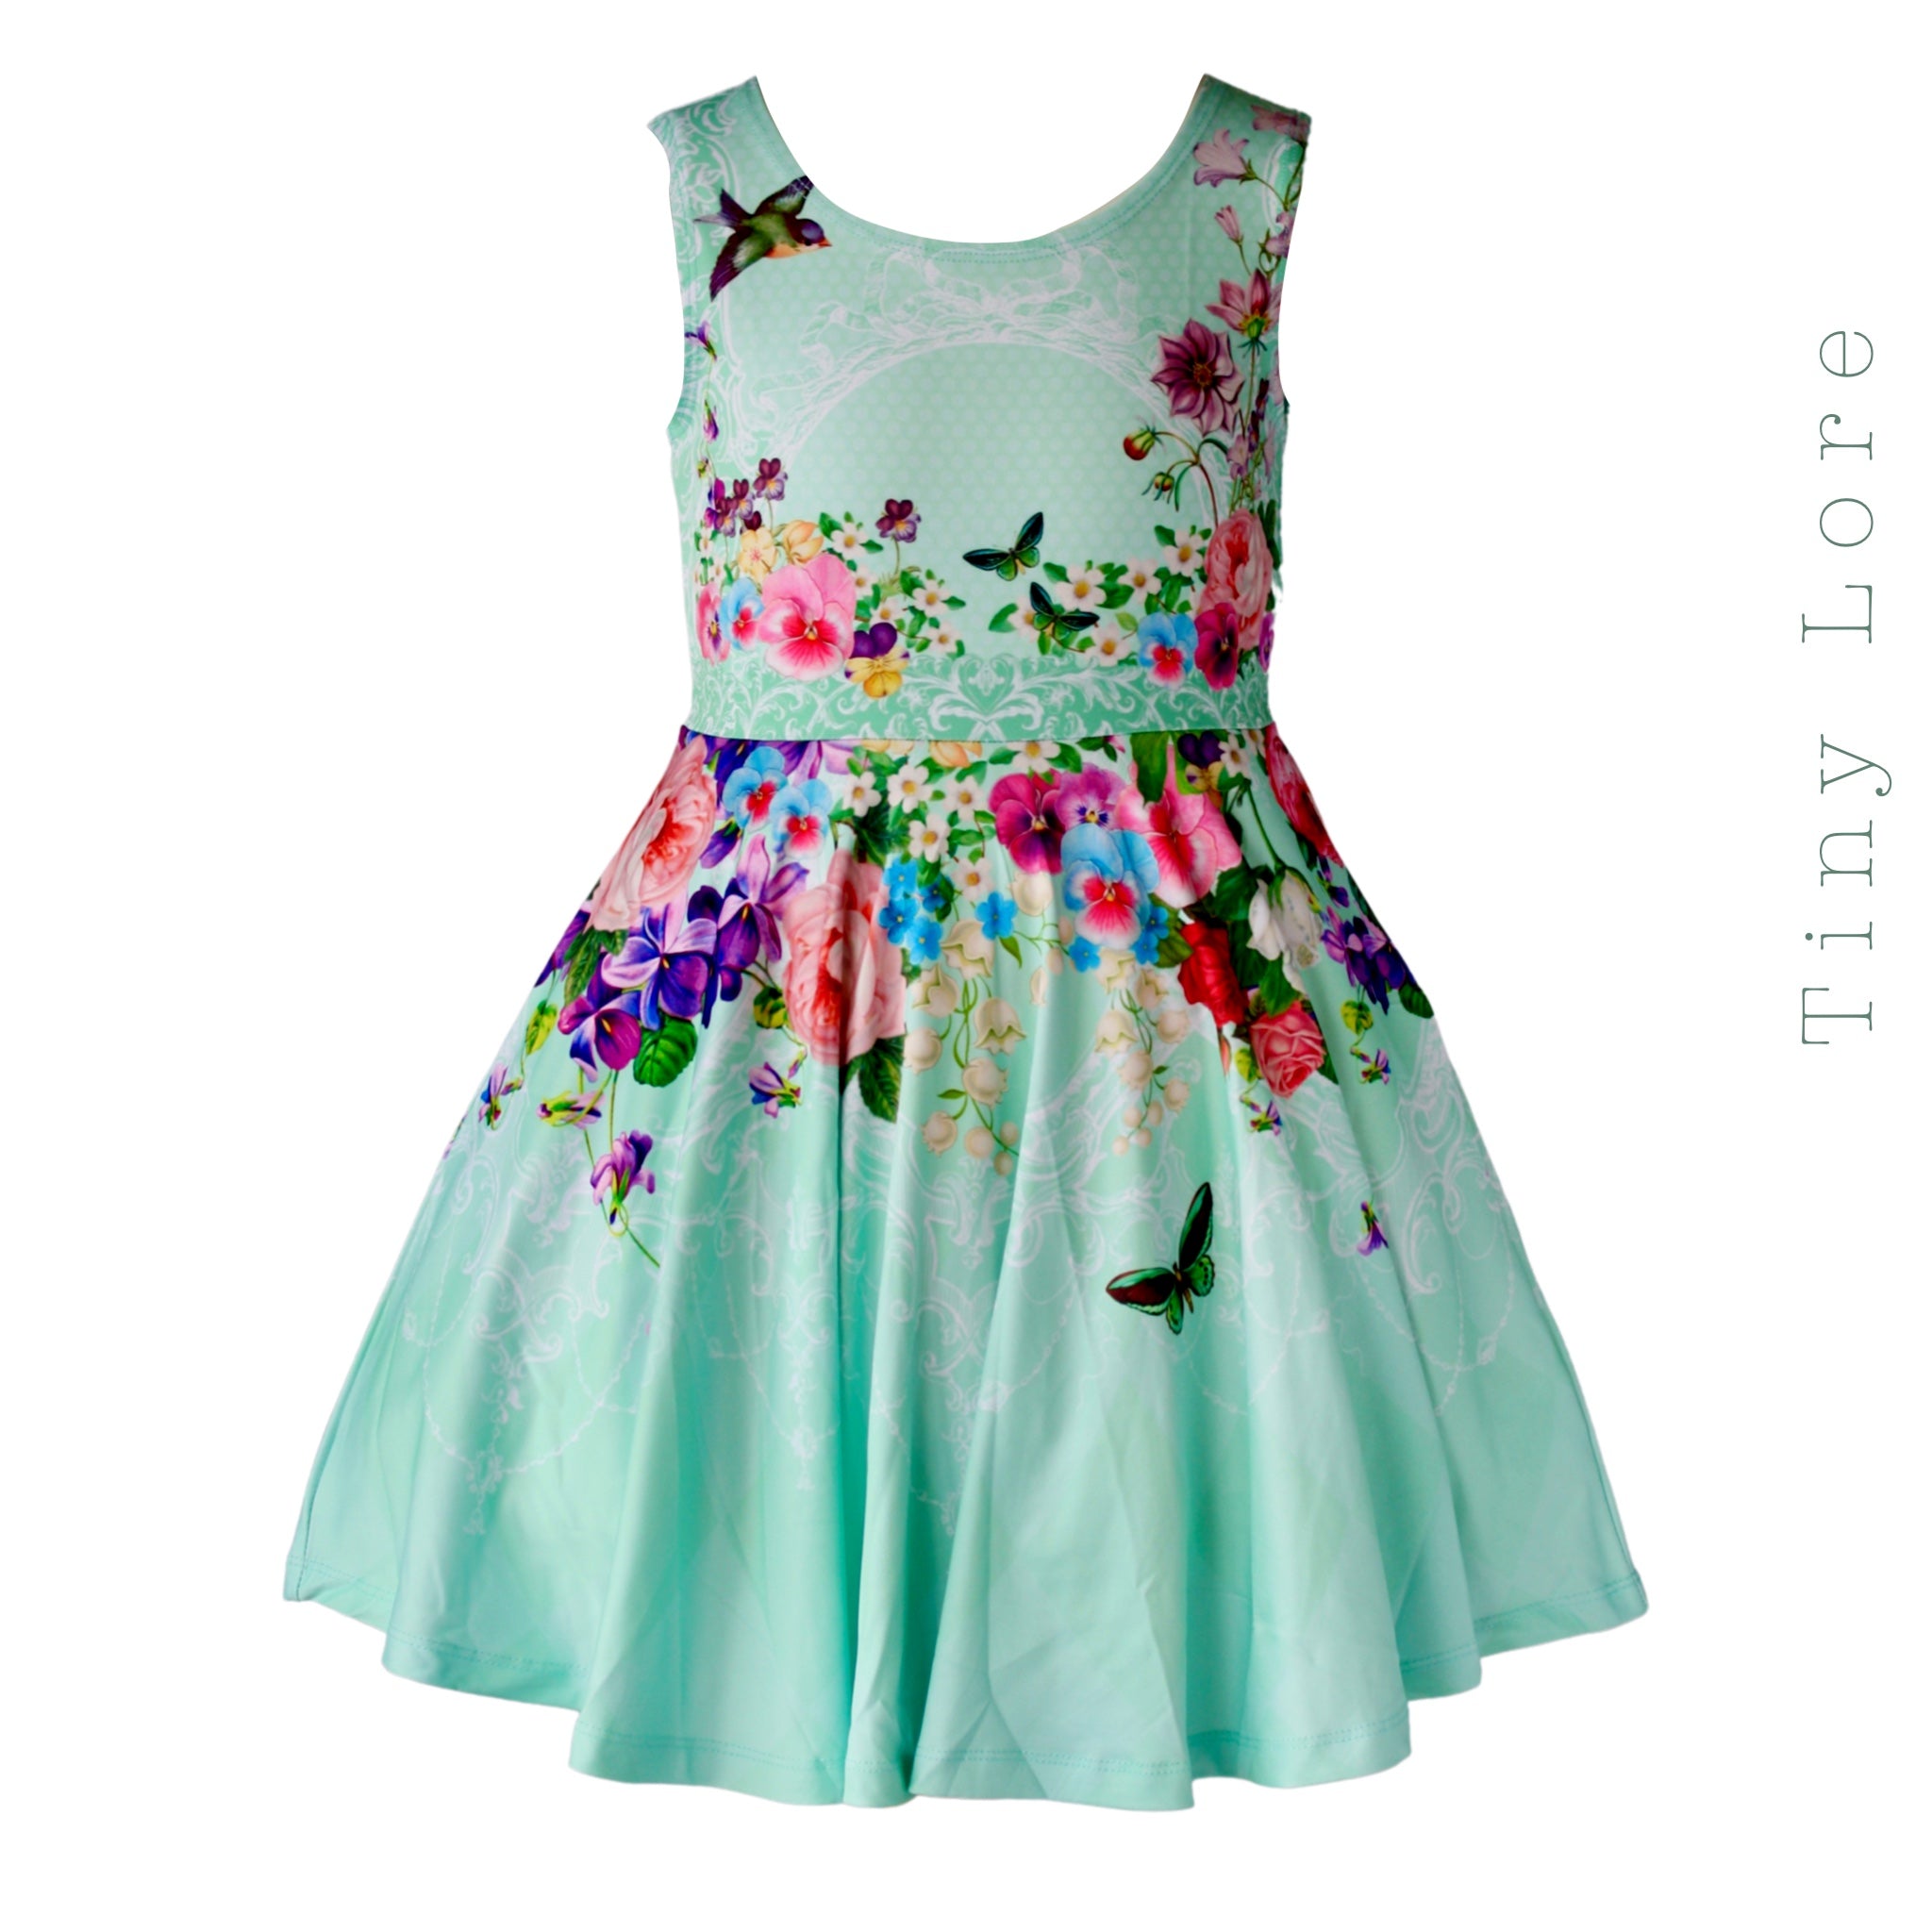 cute spring dresses for girls